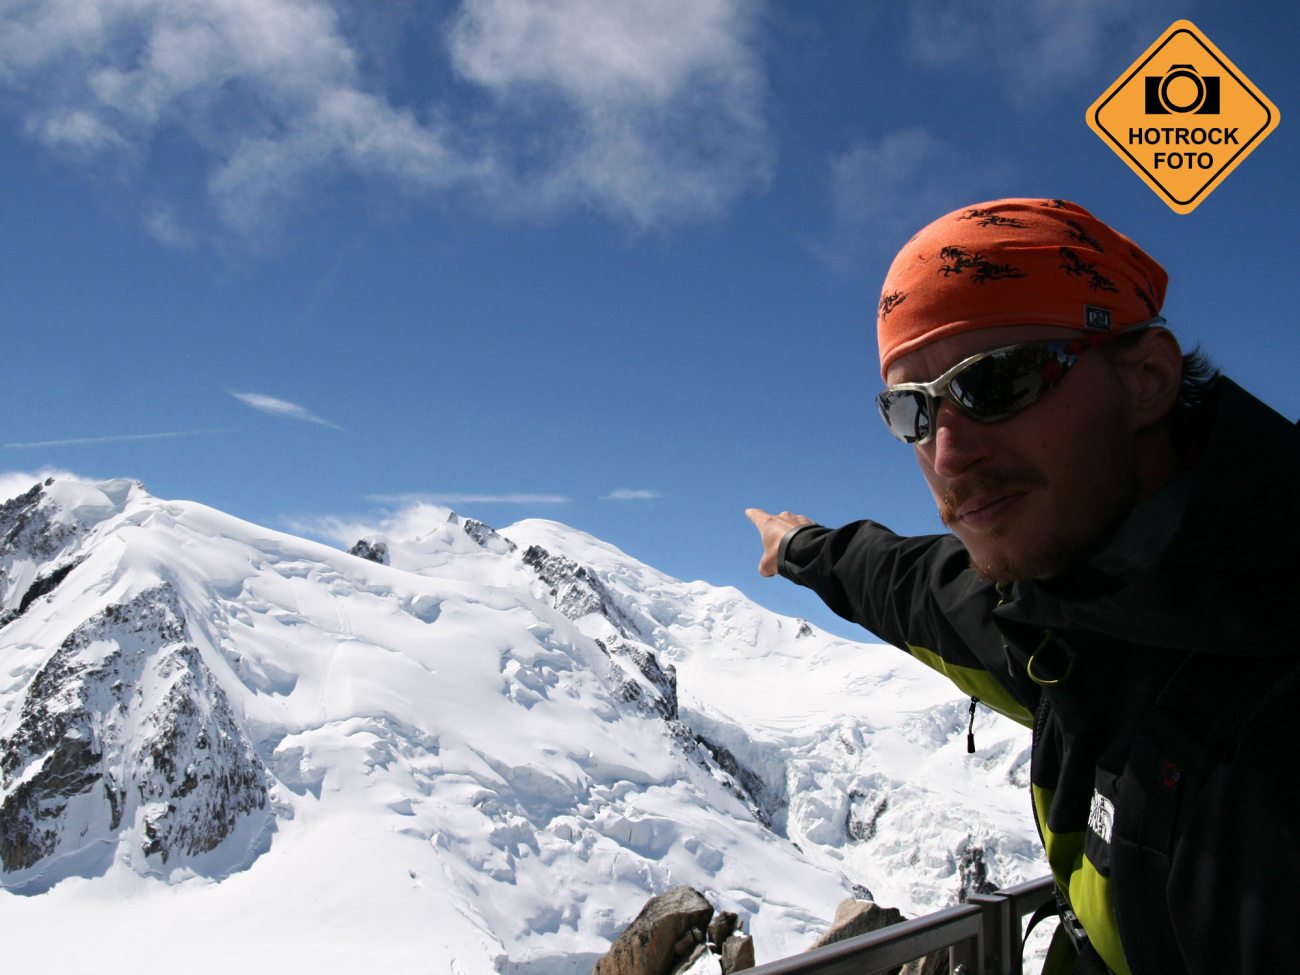 Přesná výška hory Mont Blanc je neznámá